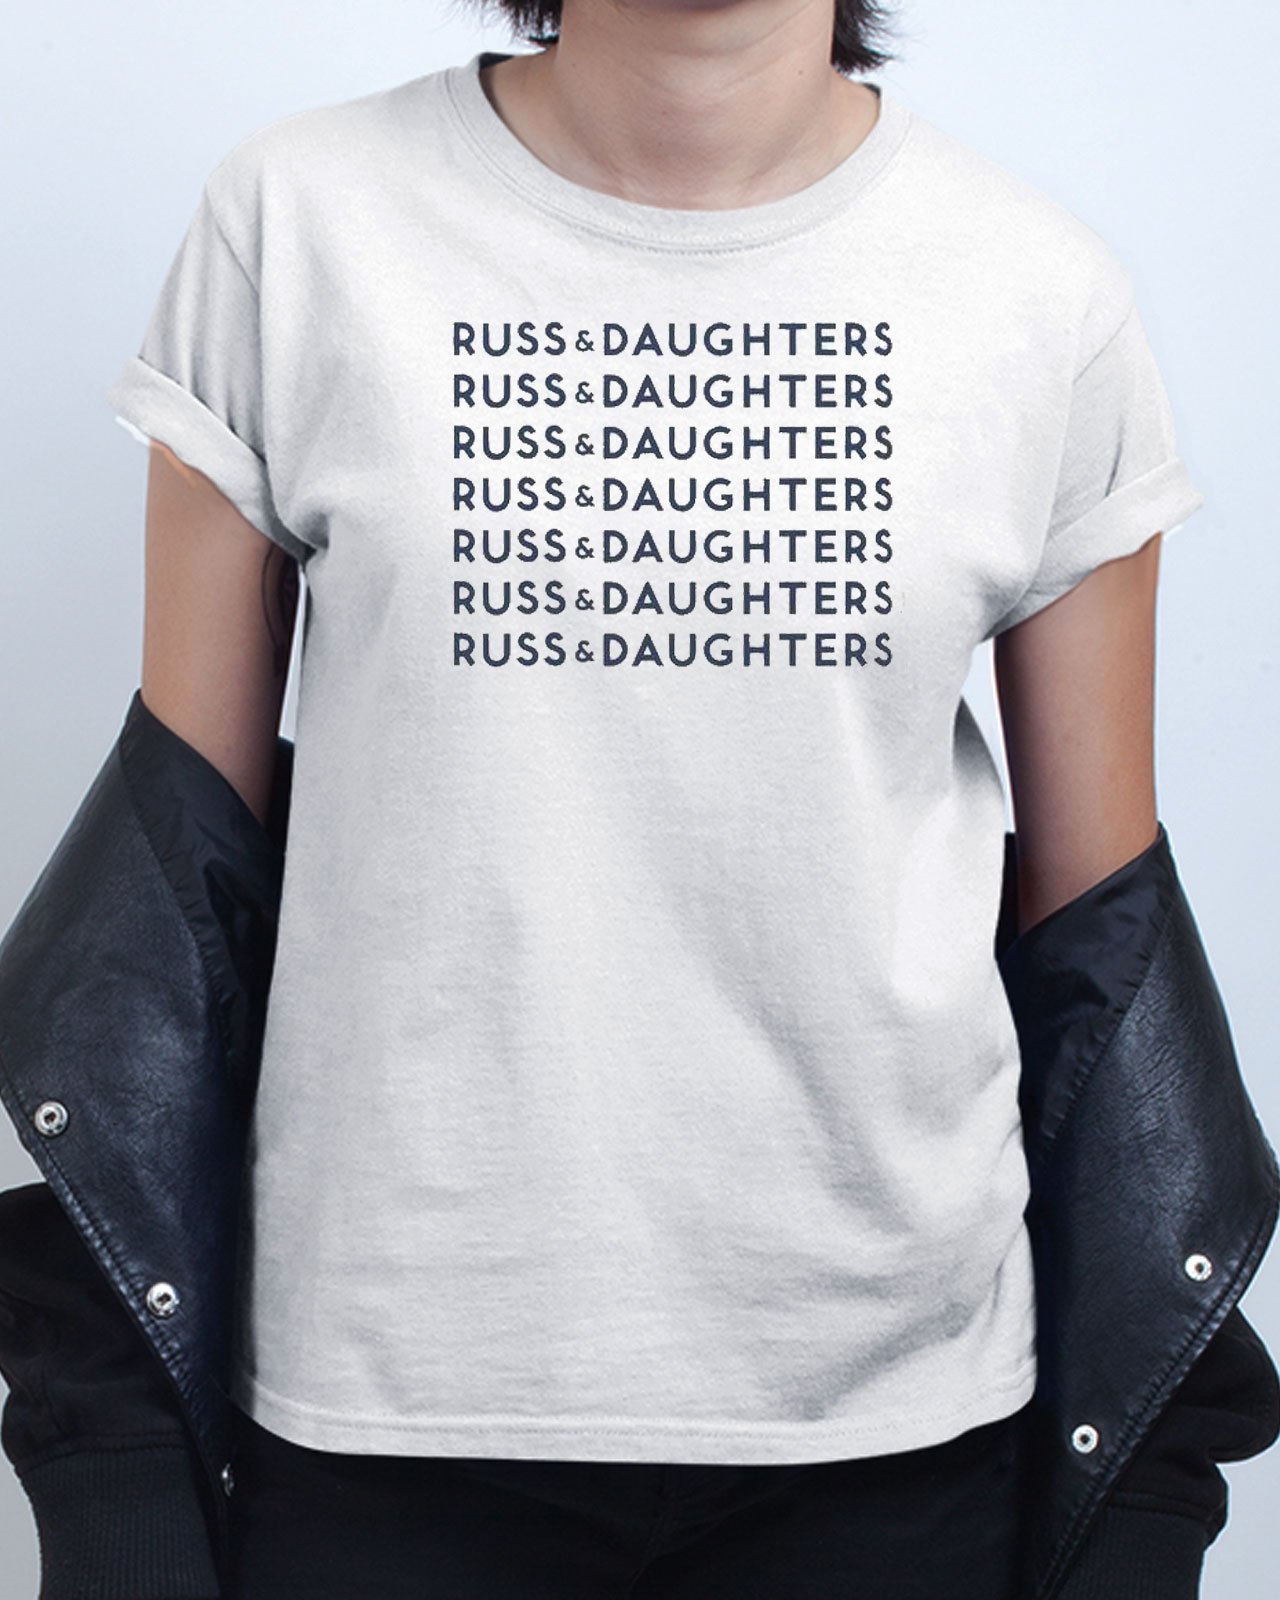 russ t shirt